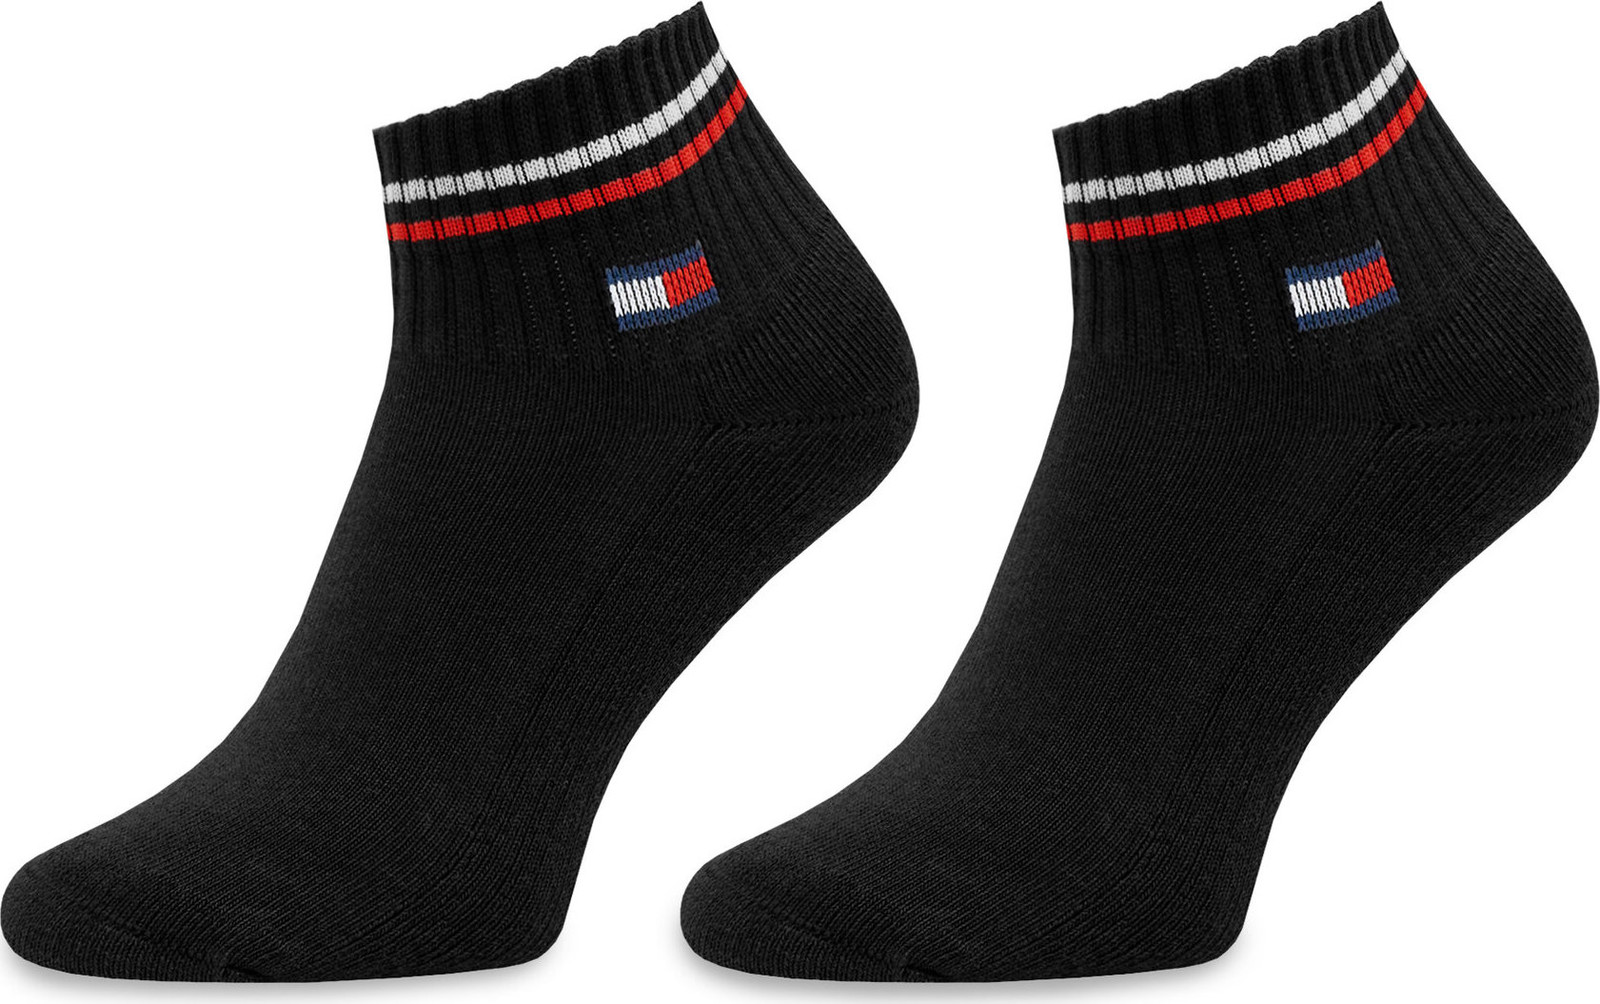 Sada 2 párů nízkých ponožek unisex Tommy Hilfiger 701228177 Black 003